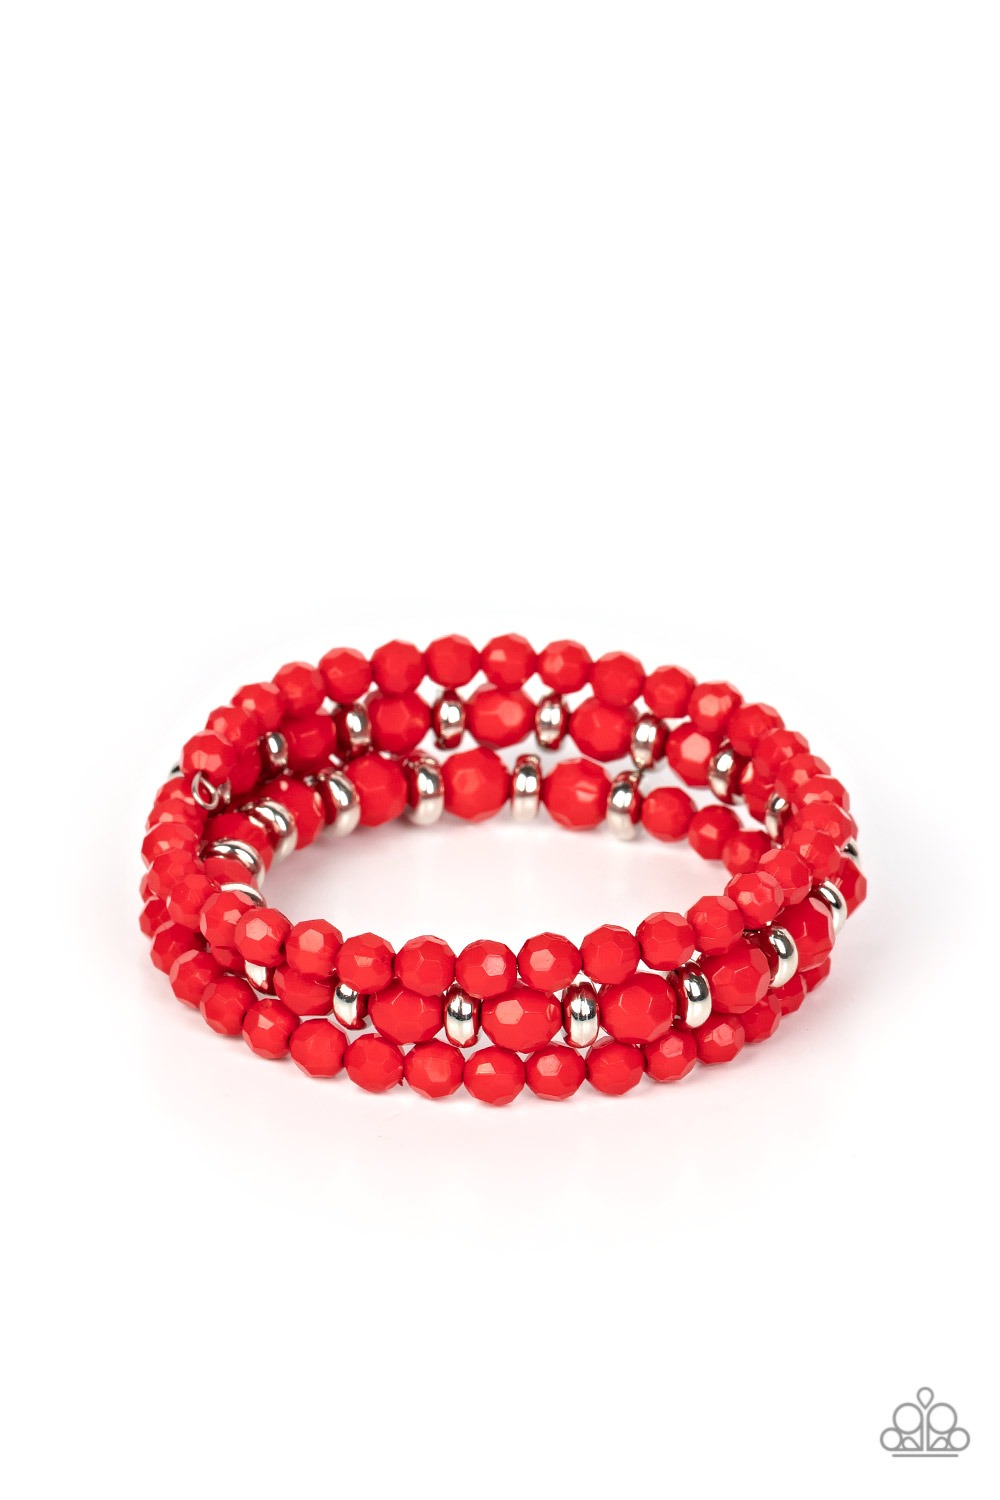 Bracelet - Its a Vibe - Red